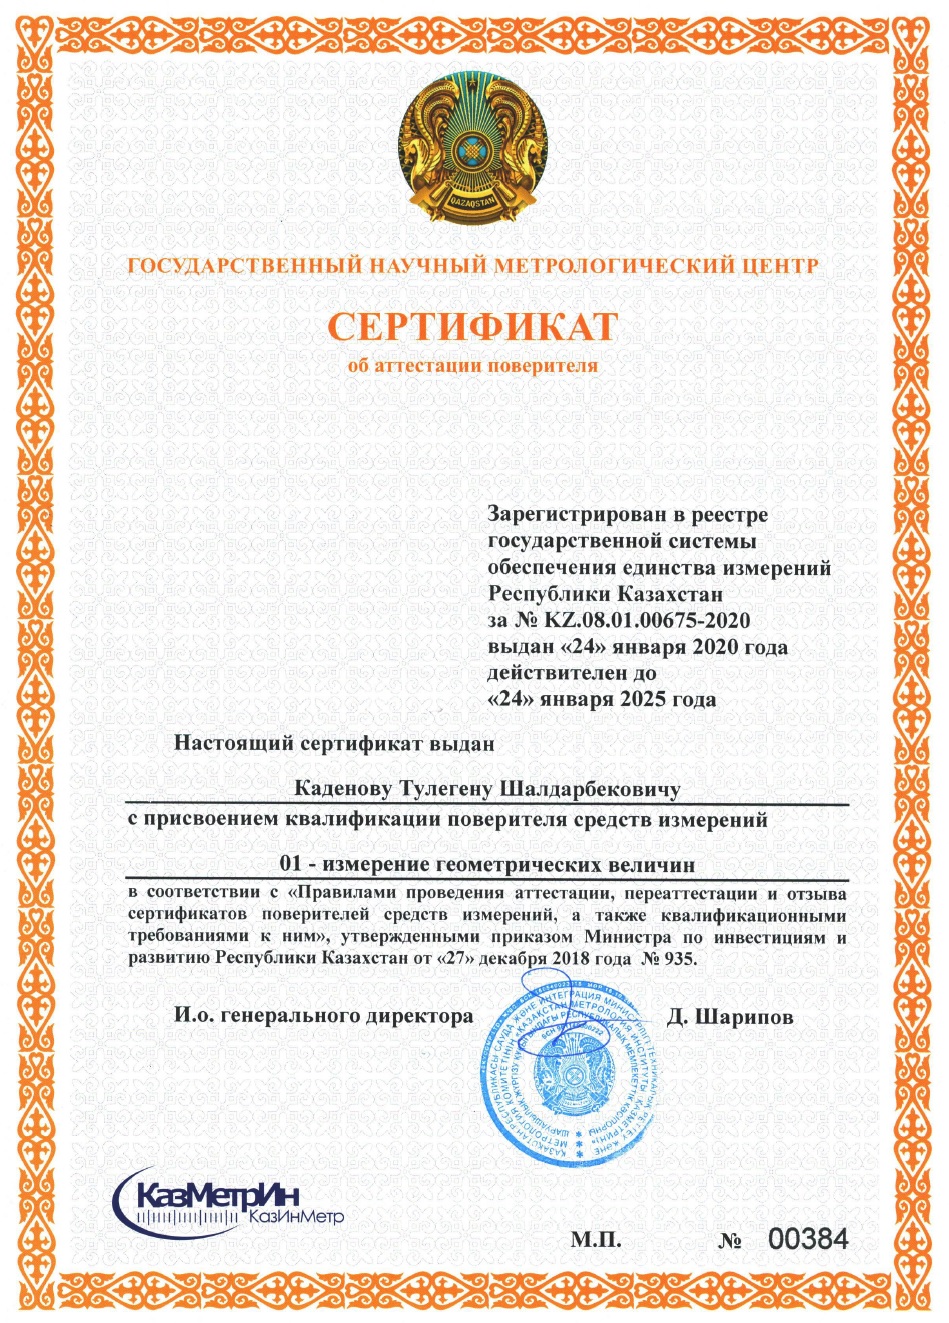 Сертификат поверителя измерении геометрических величин. №00384. Каденов Т.Ш.